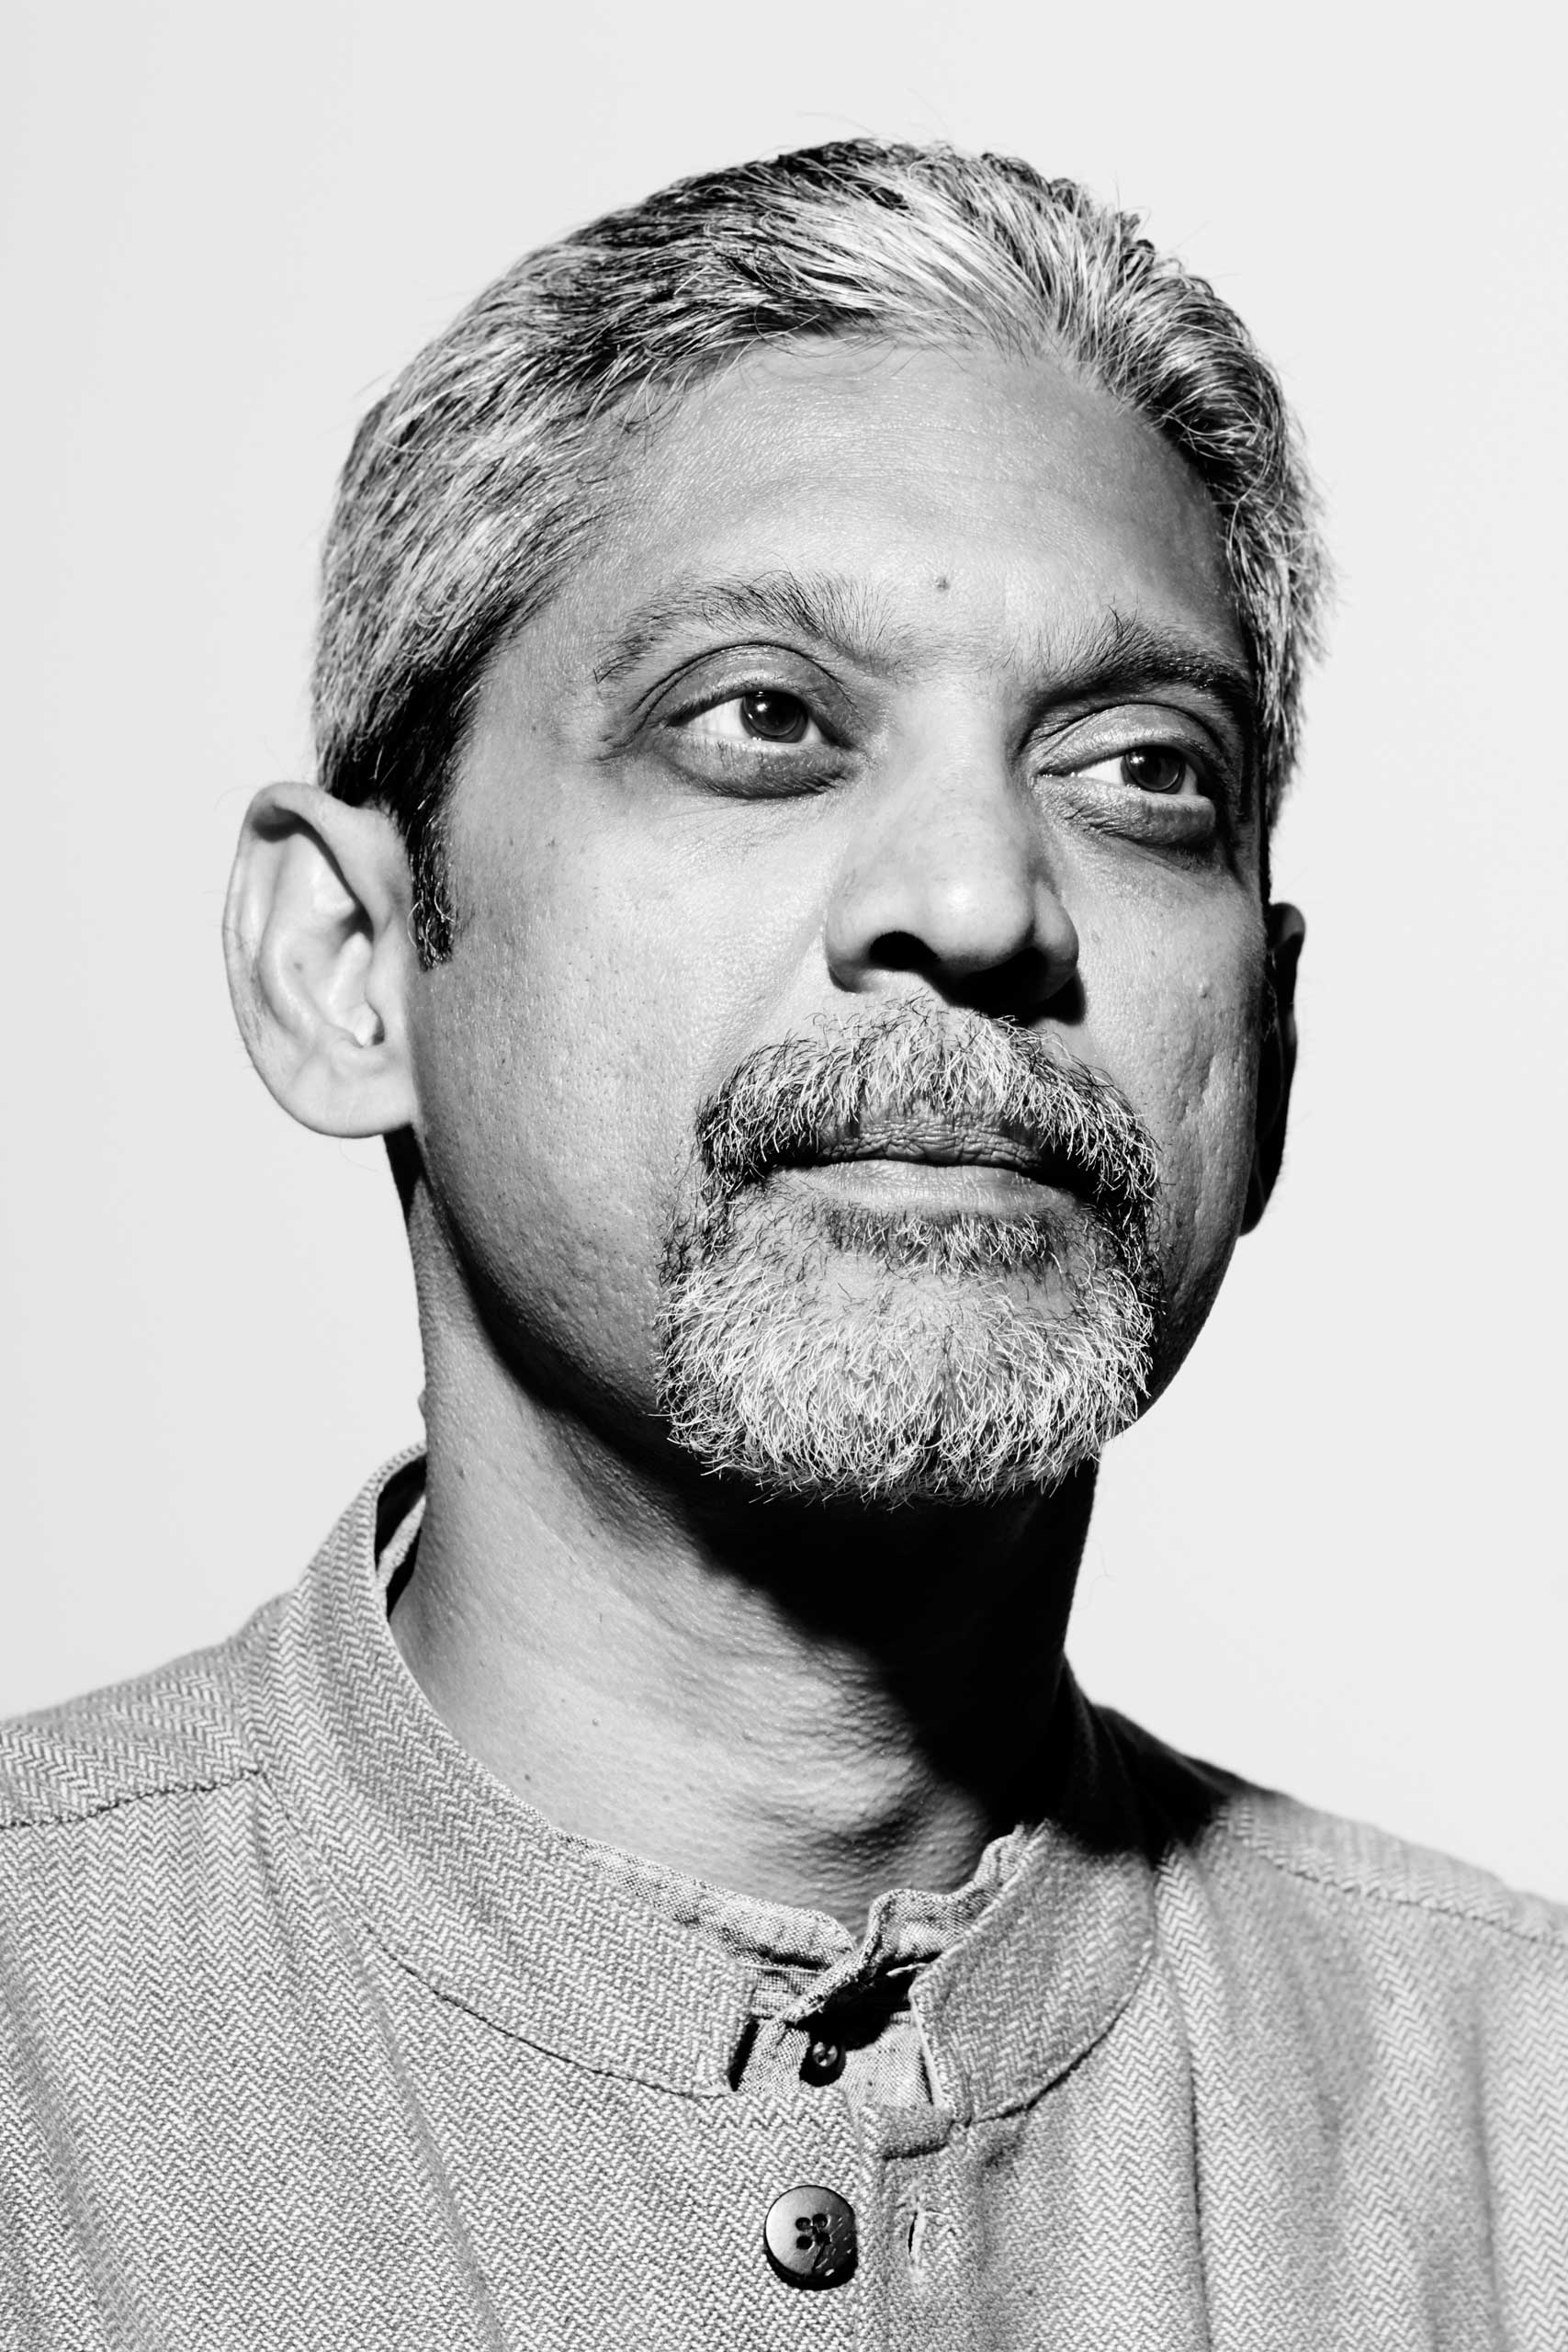 TIME 100 2015 Vikram Patel